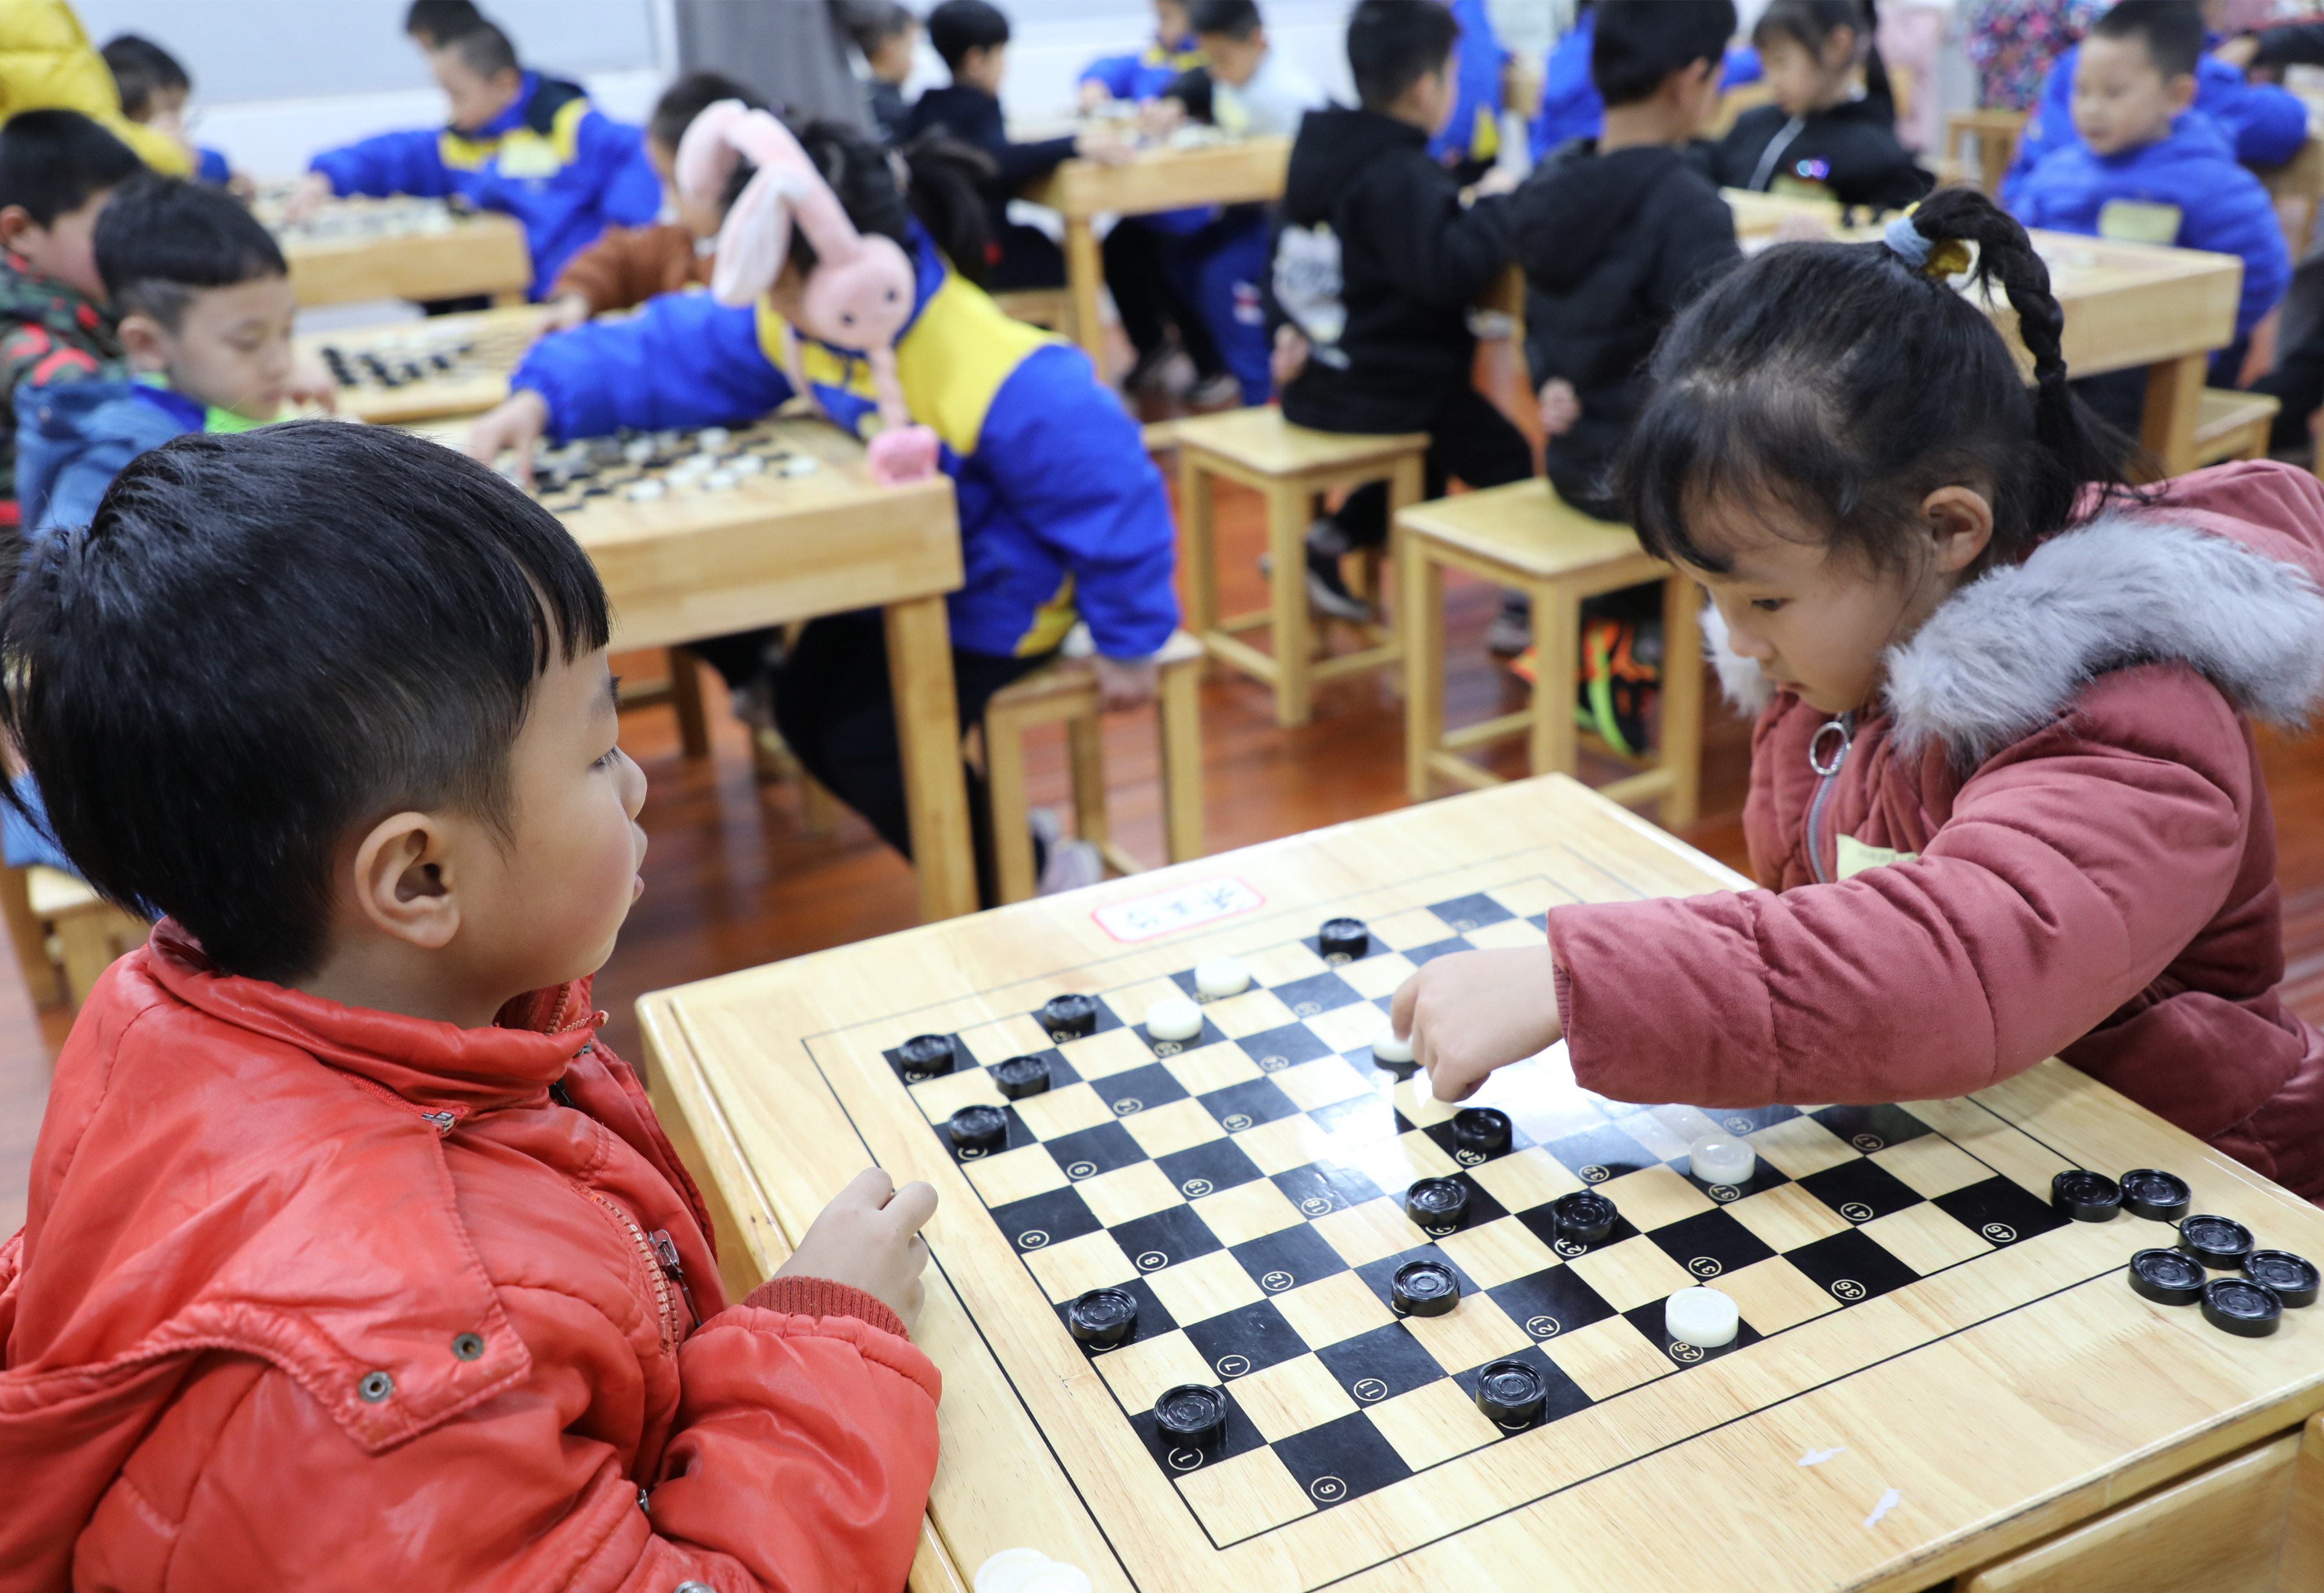 体验跳跃人生 长沙开福浏阳河小学举行国际跳棋年级团体赛